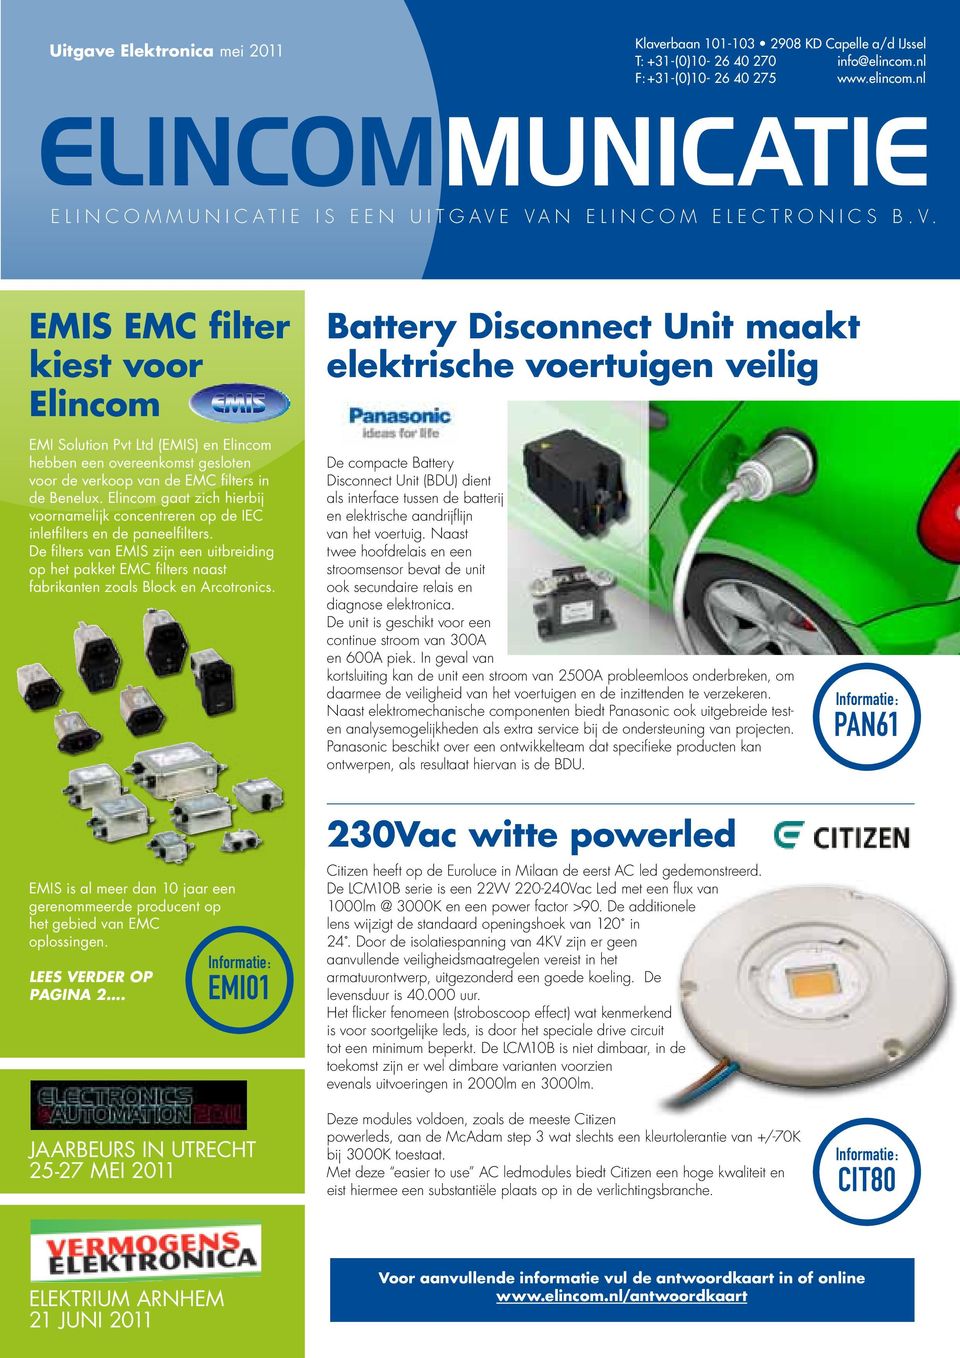 EMIS EMC filter kiest voor Elincom Battery Disconnect Unit maakt elektrische voertuigen veilig EMI Solution Pvt Ltd (EMIS) en Elincom hebben een overeenkomst gesloten voor de verkoop van de EMC